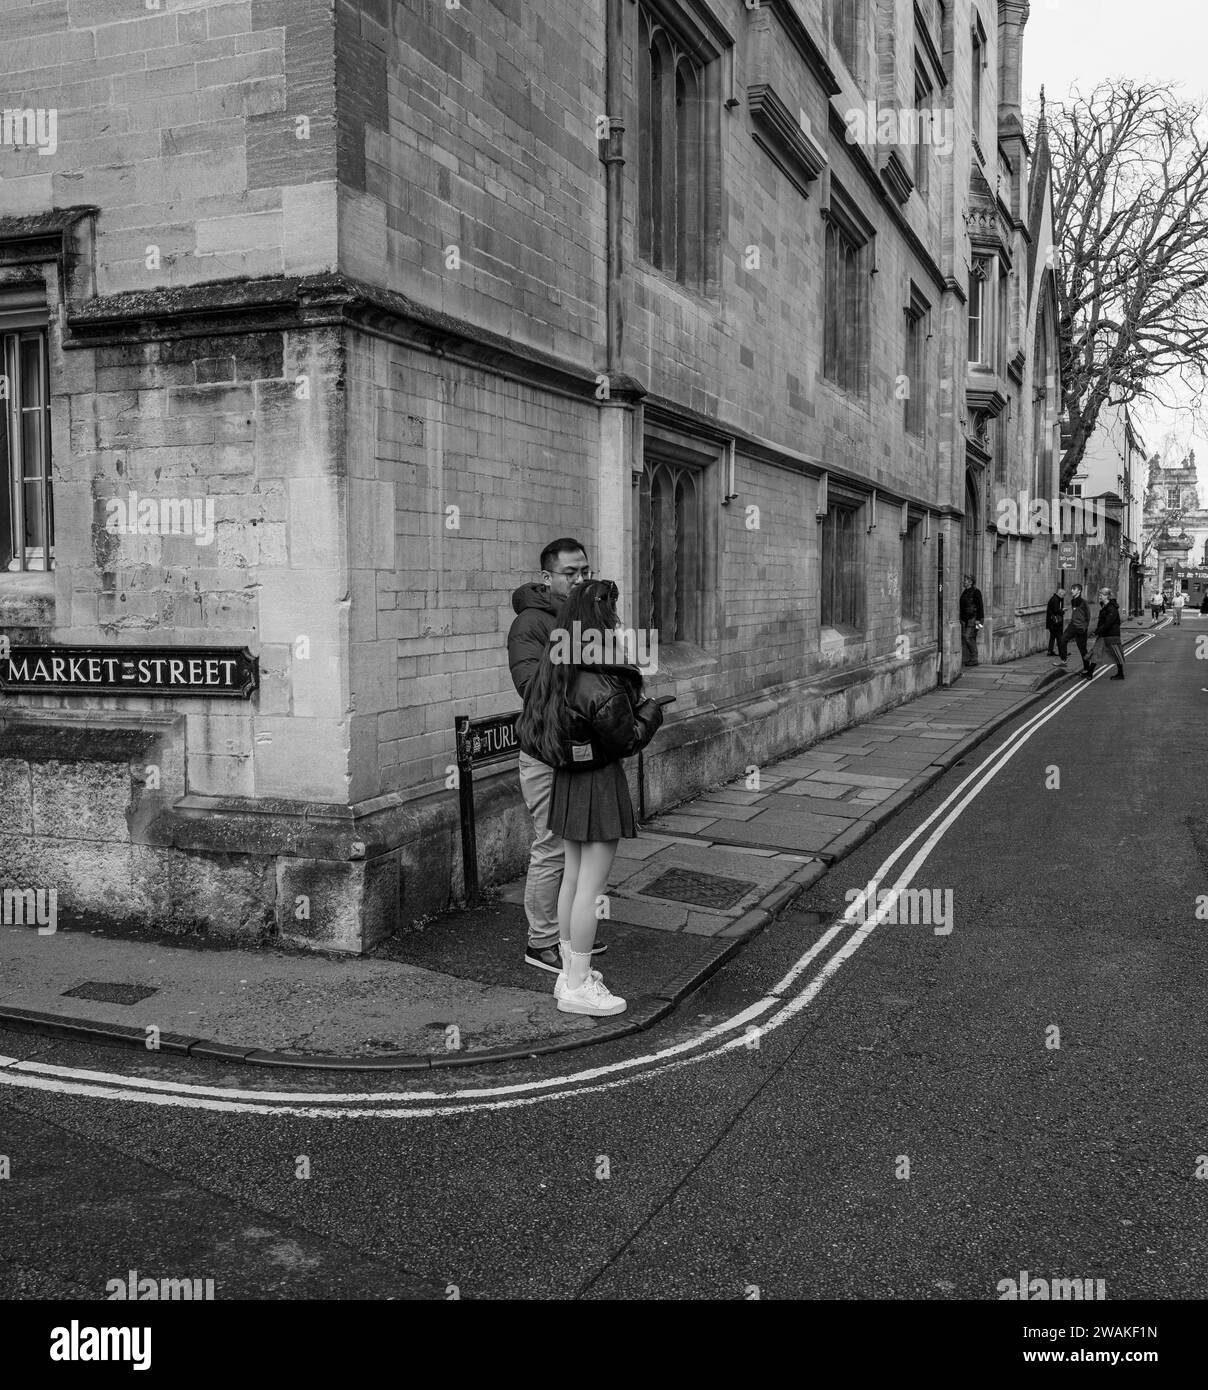 Gente all'angolo di Market Street, Oxford, Inghilterra Foto Stock